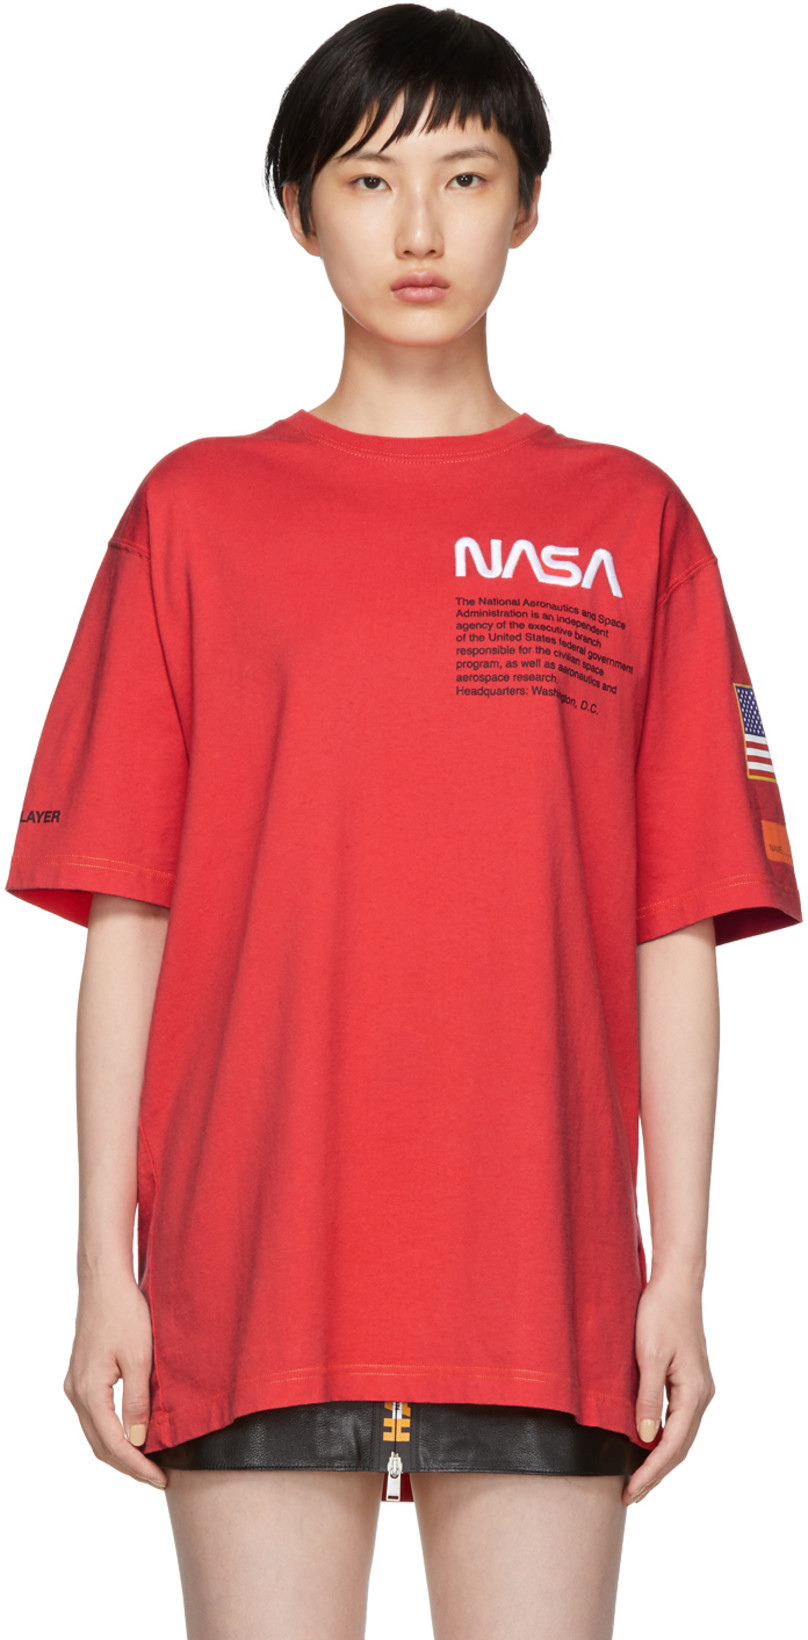 セールファッション Heron Preston NASA Tee Red レア 新品